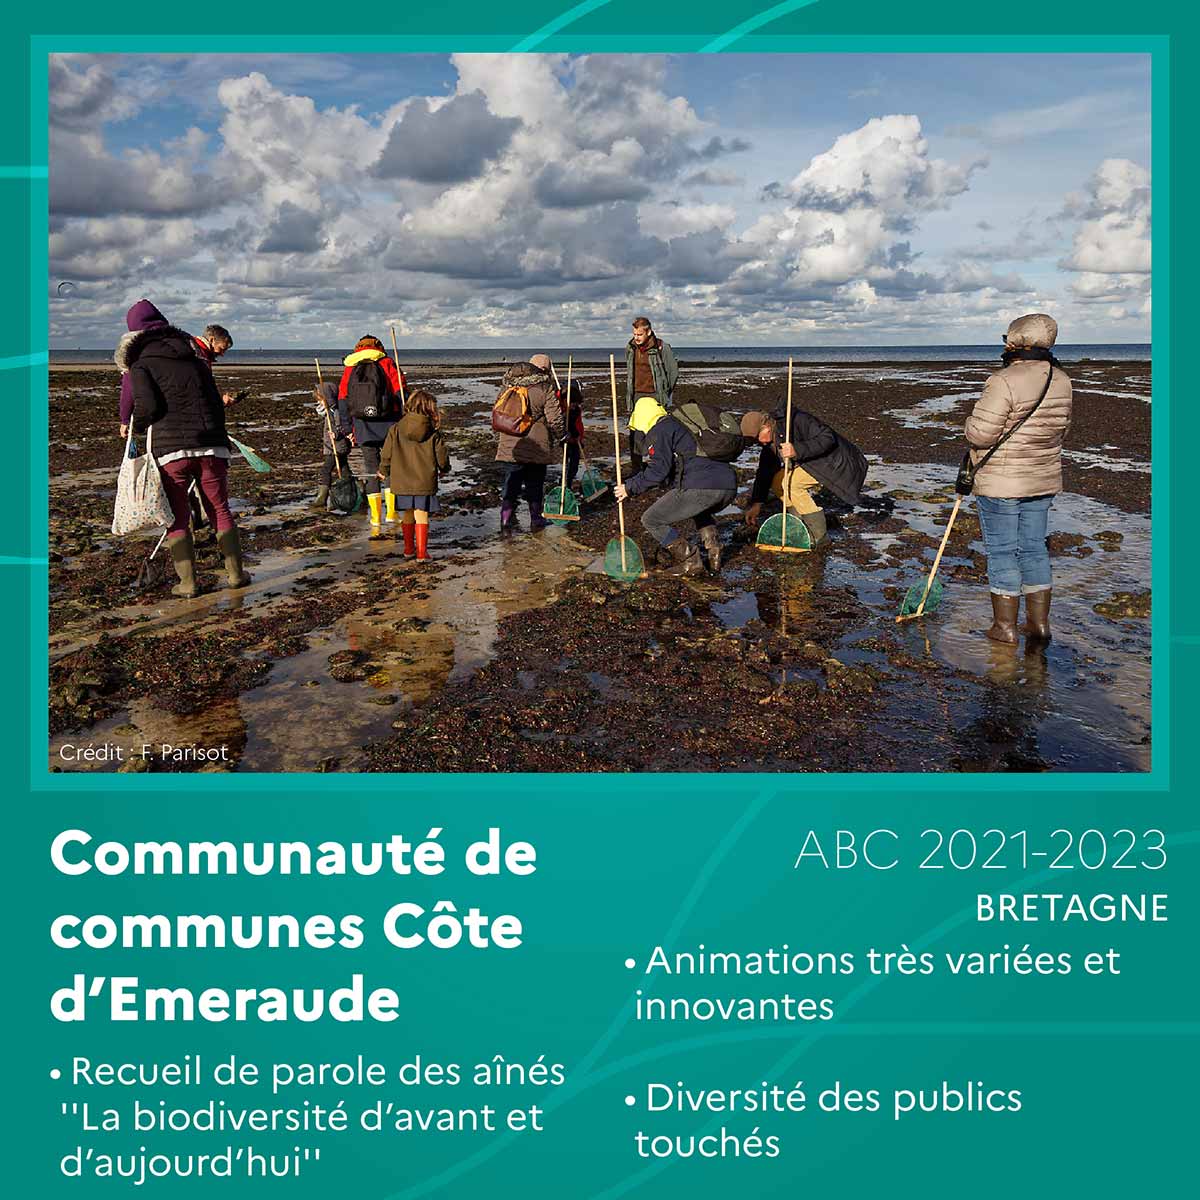 Communauté de communes Côte d’Emeraude (Bretagne)